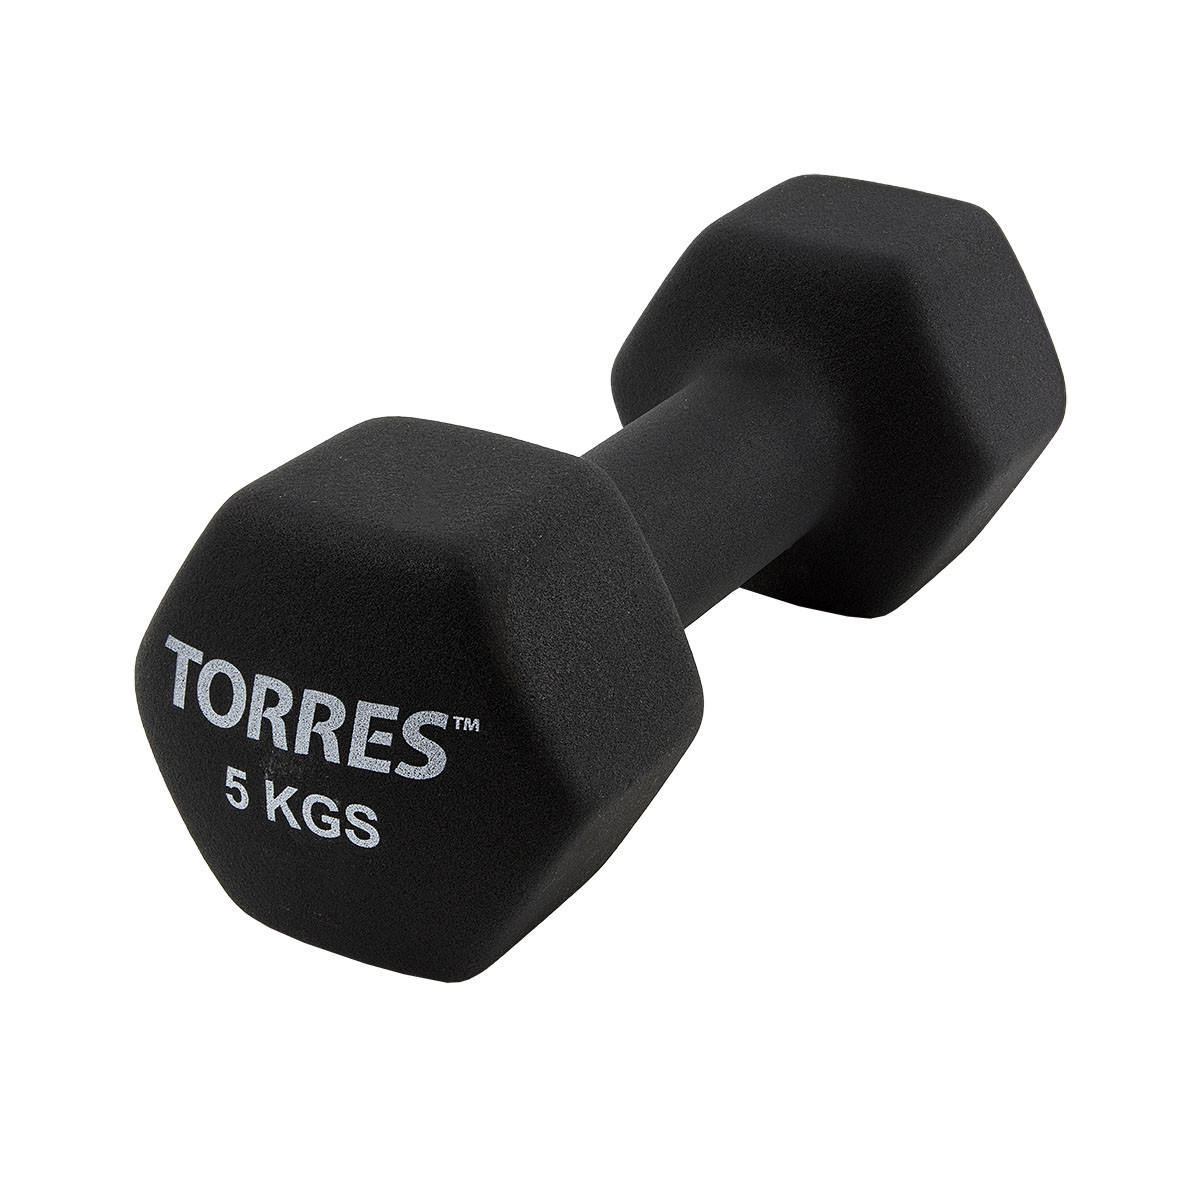  Torres 5  PL55015